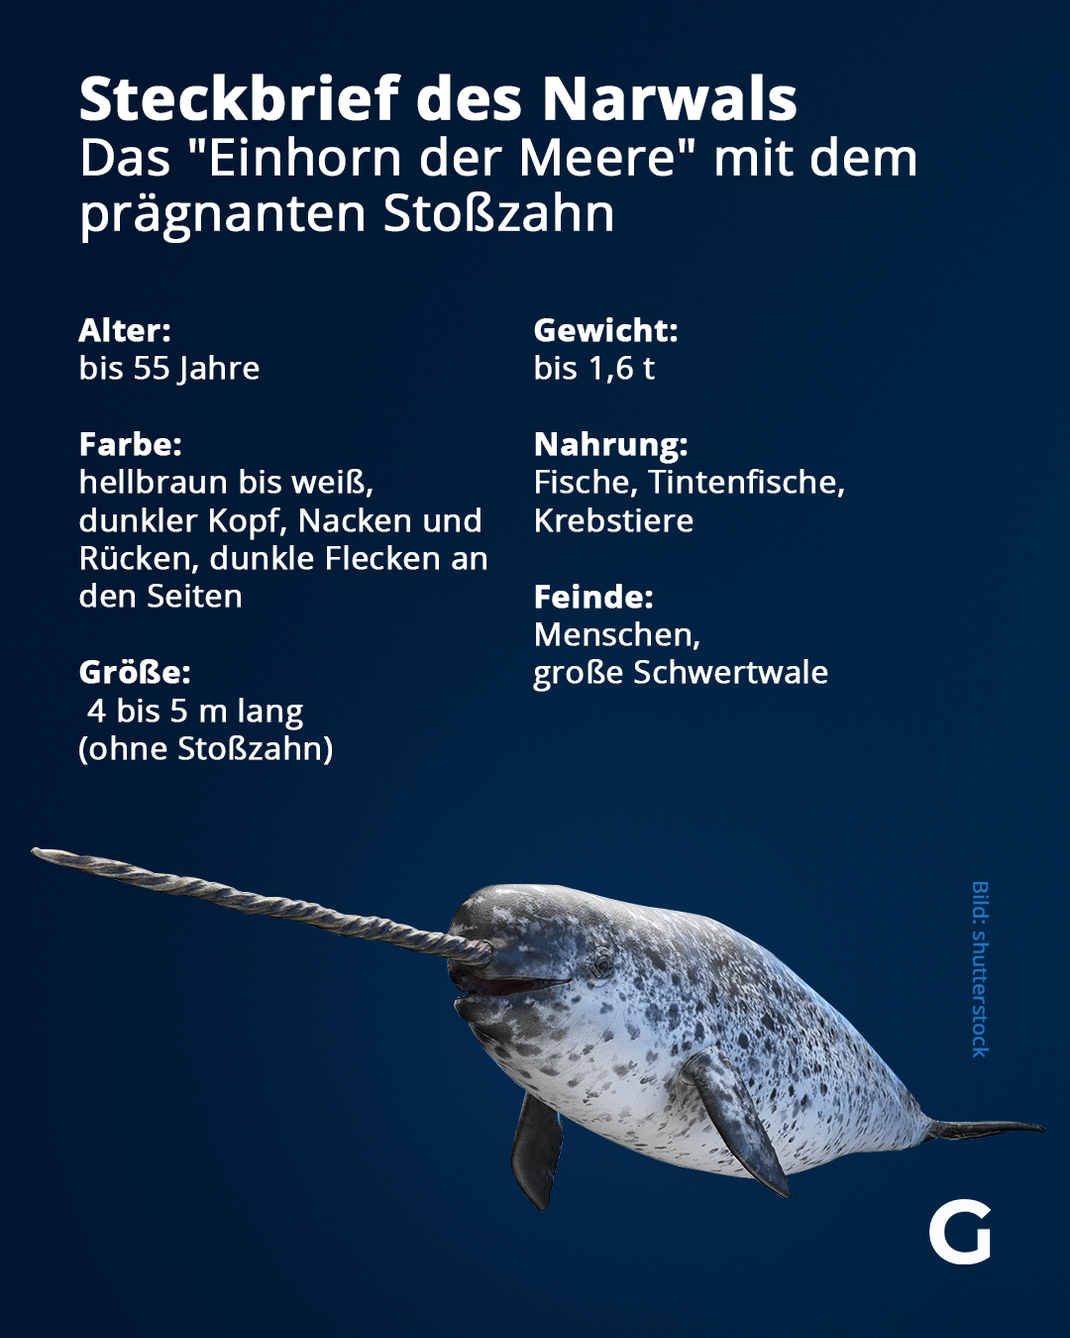 Steckbrief des Narwals: Hier erfährst du alle wichtigen Infos zu dem beeindruckenden Tier.